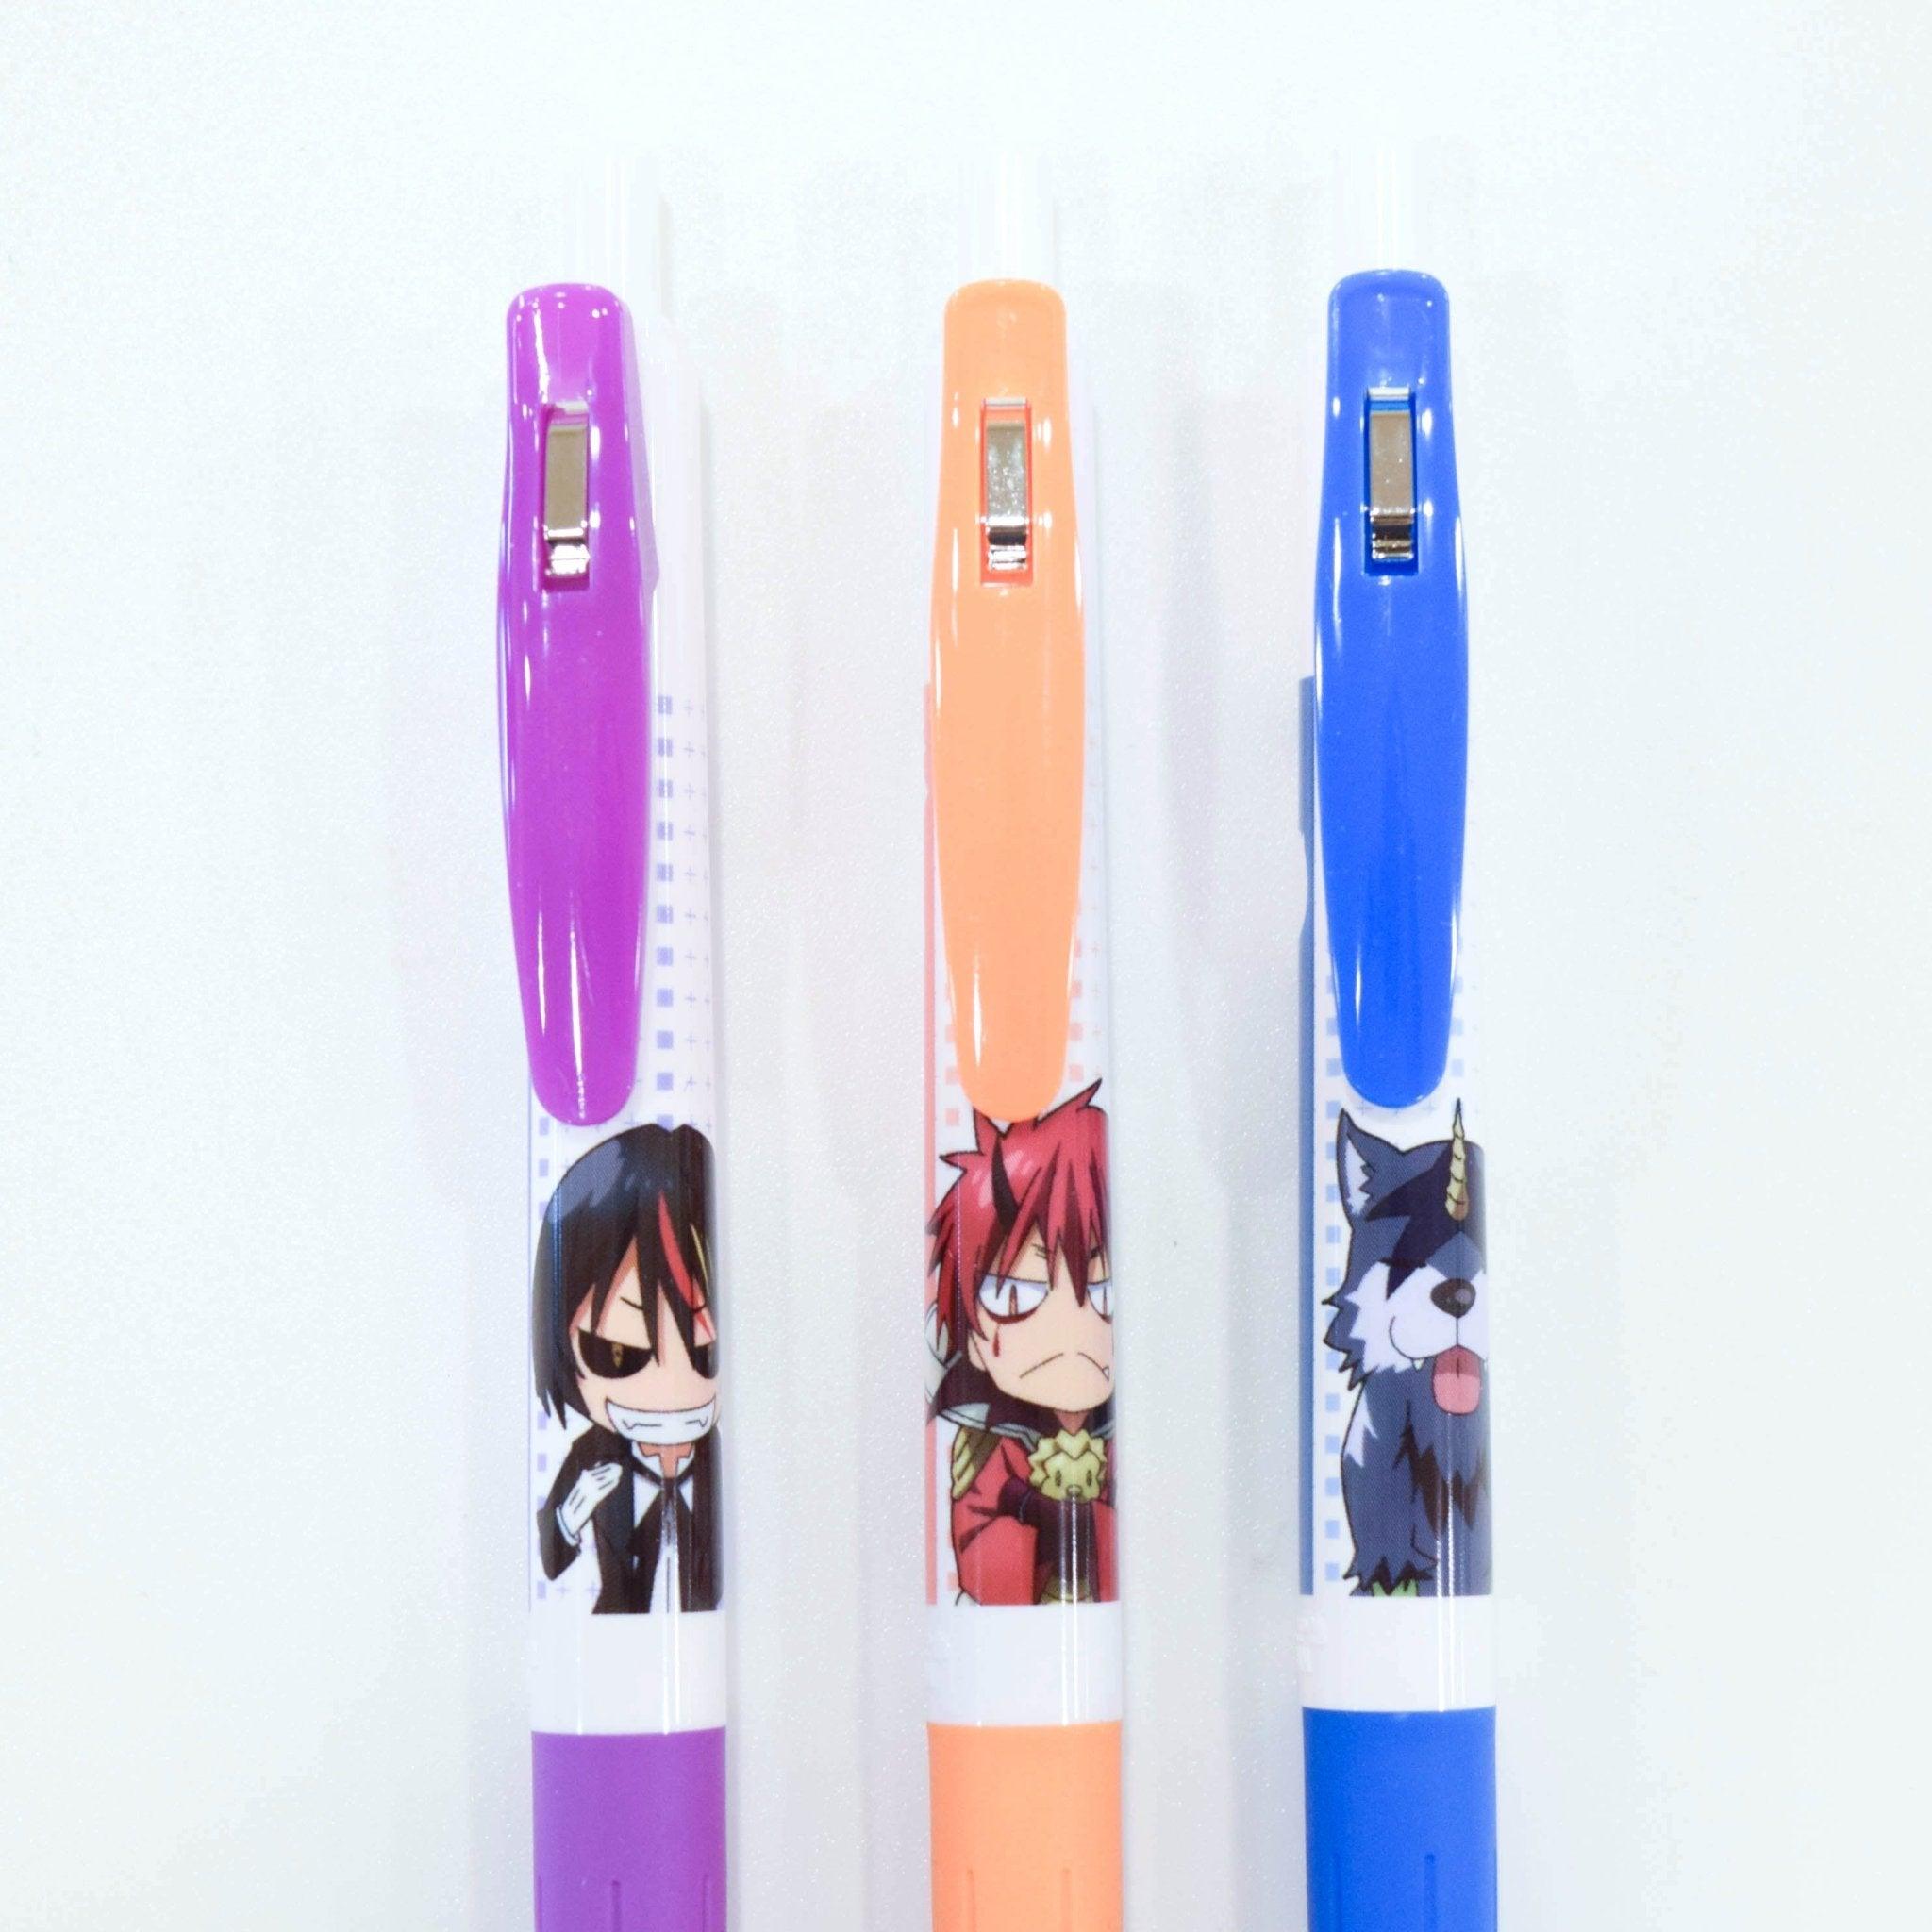 Anime Art Pen - Anime Art Pen added a new photo.